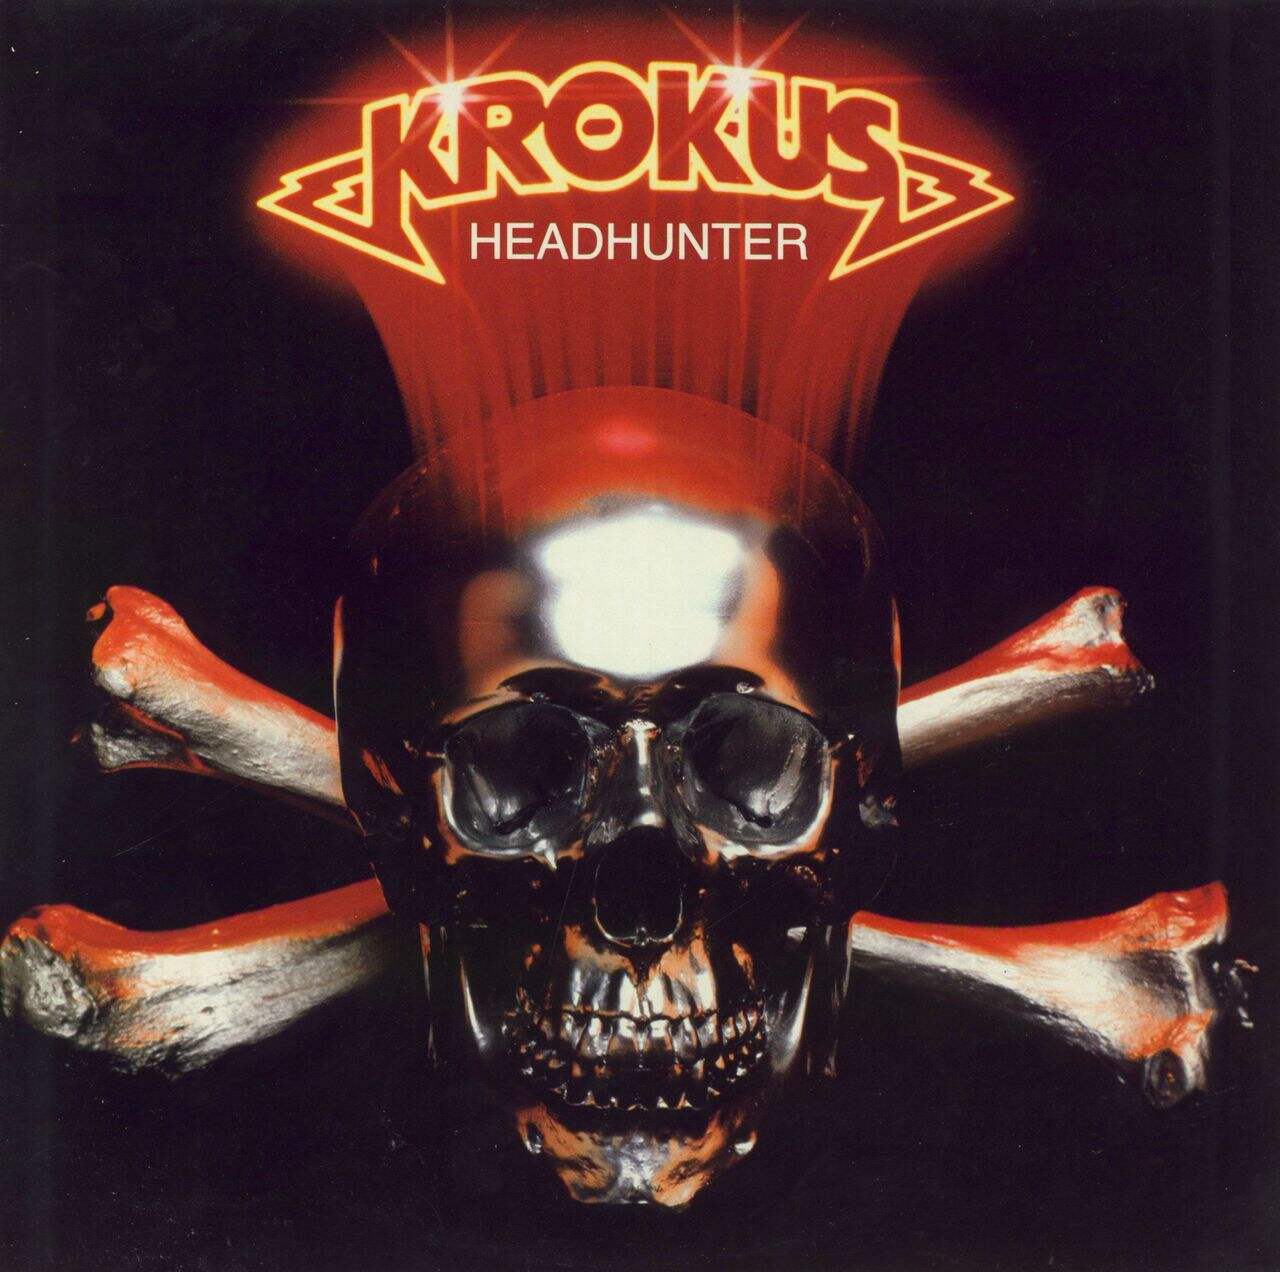 Krokus Headhunter + Inserts & Sticker Swiss Vinyl LP